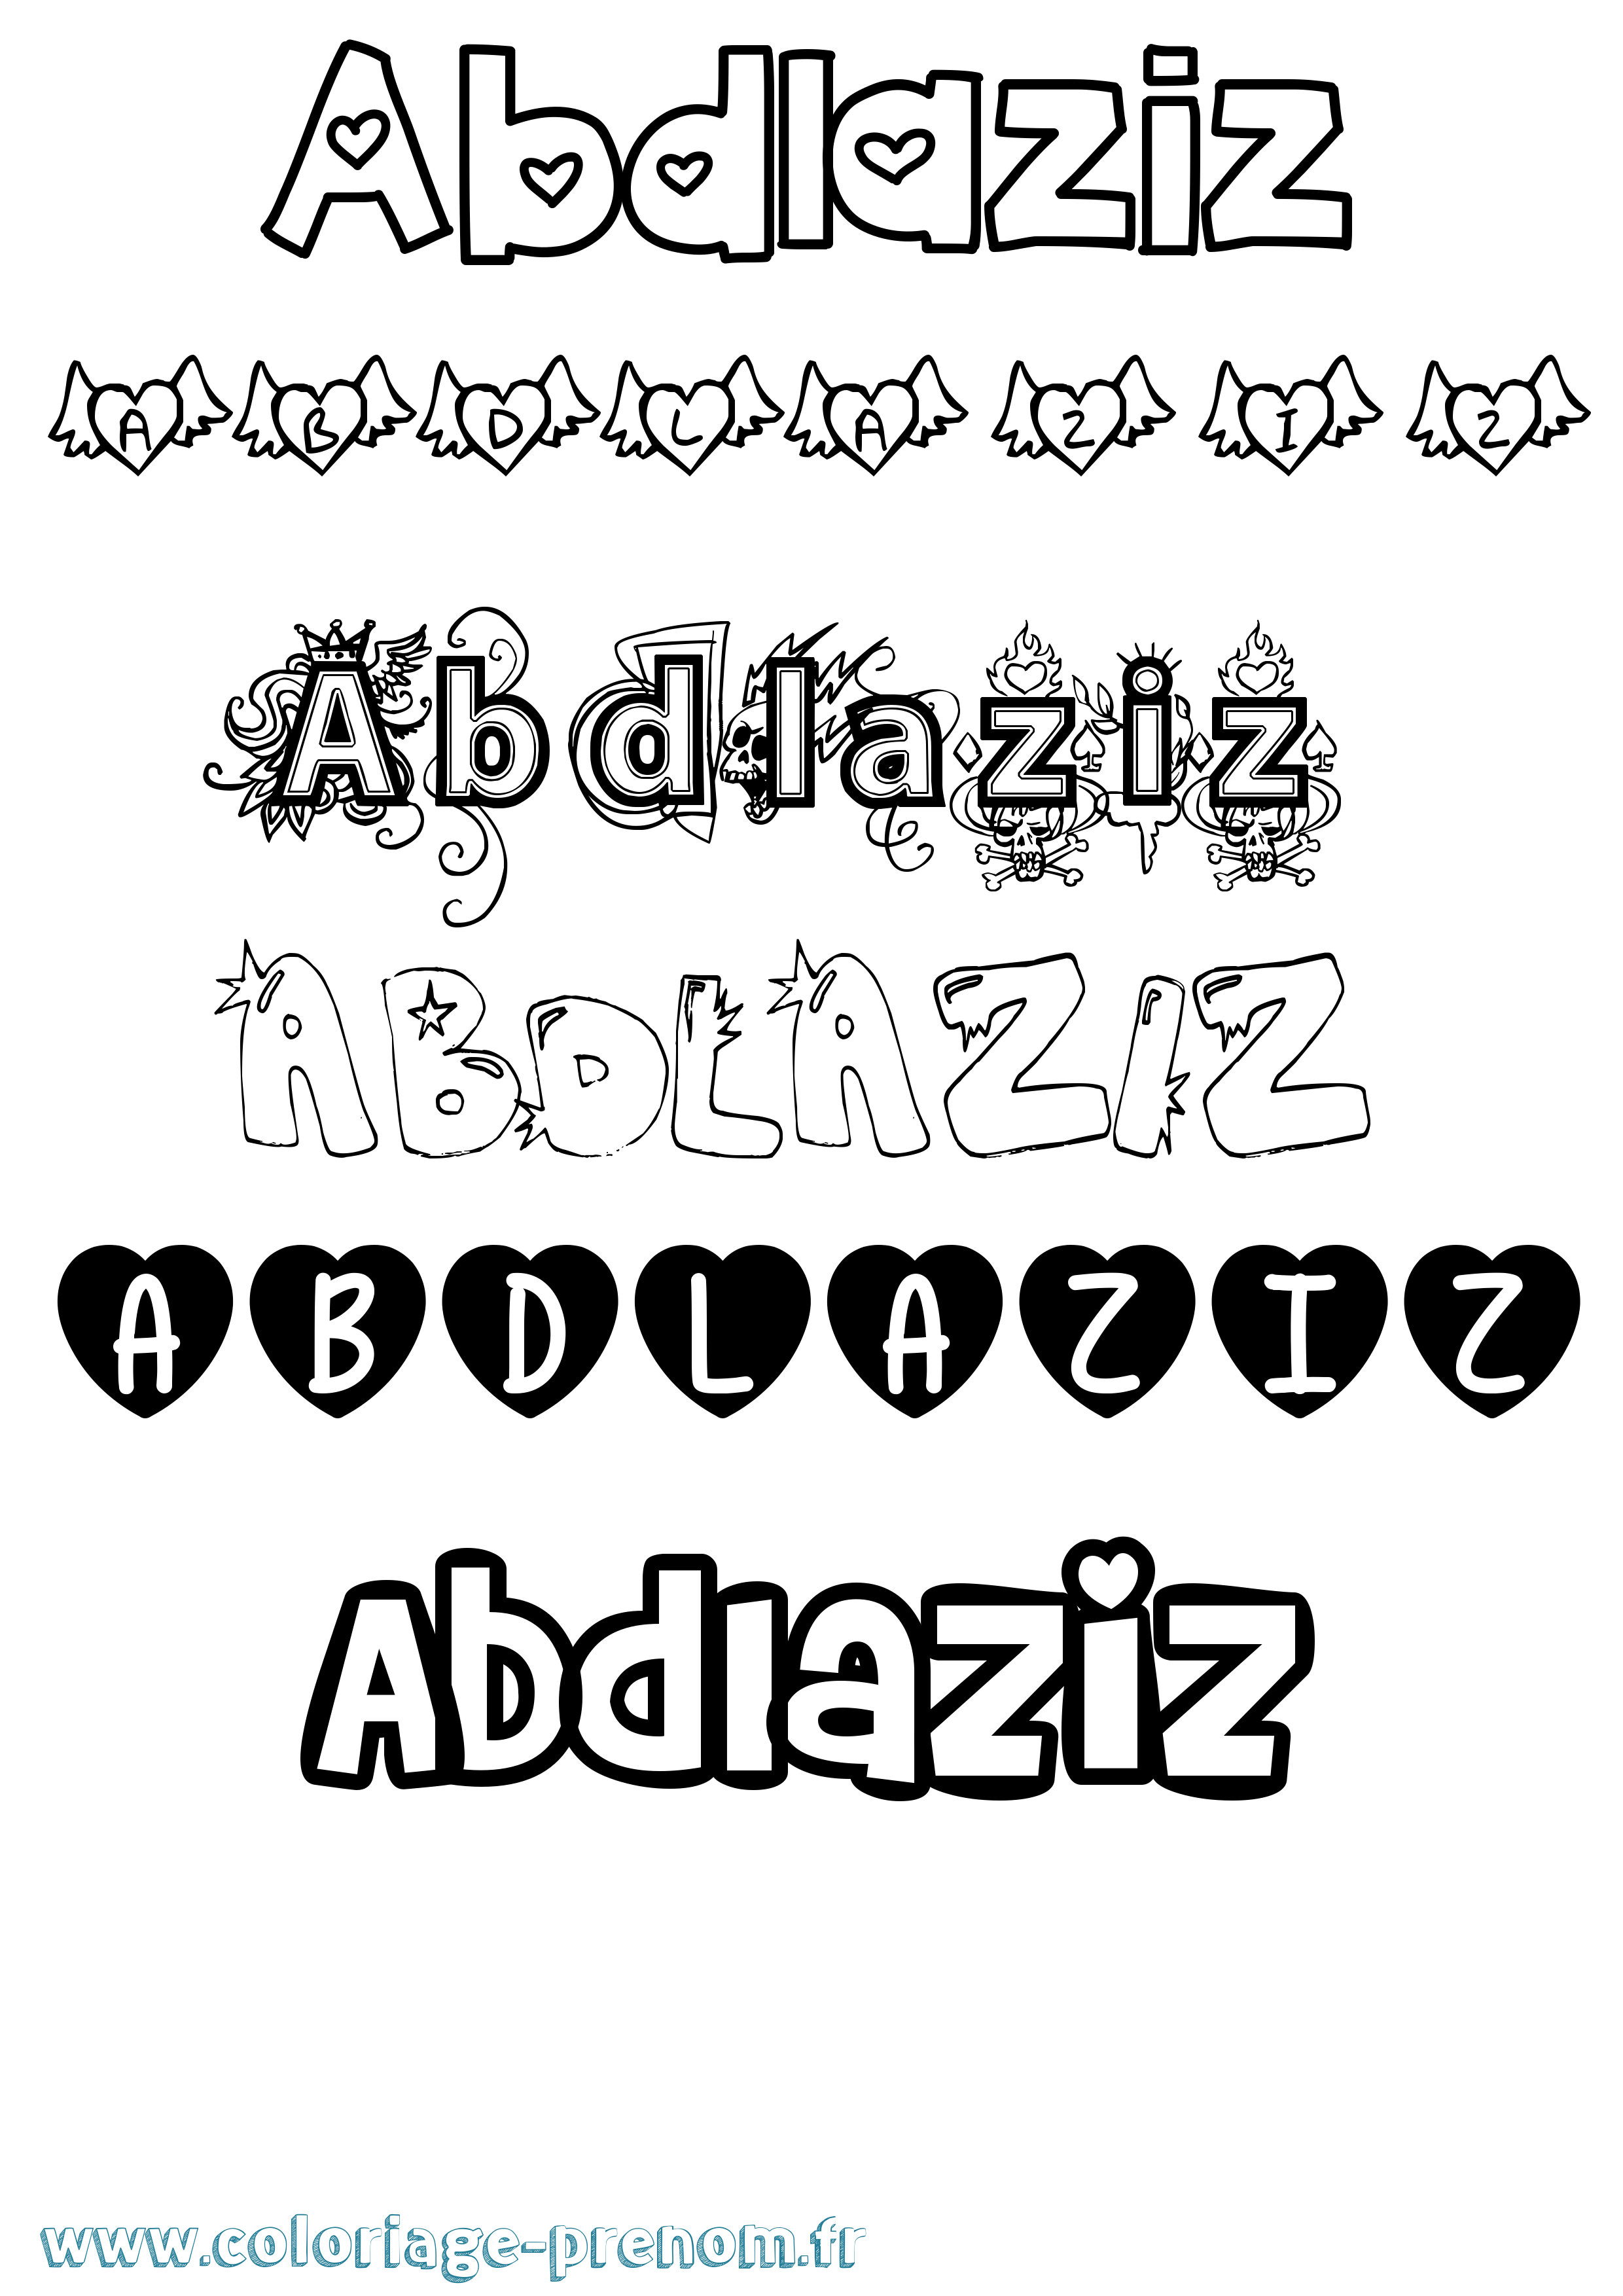 Coloriage prénom Abdlaziz Girly